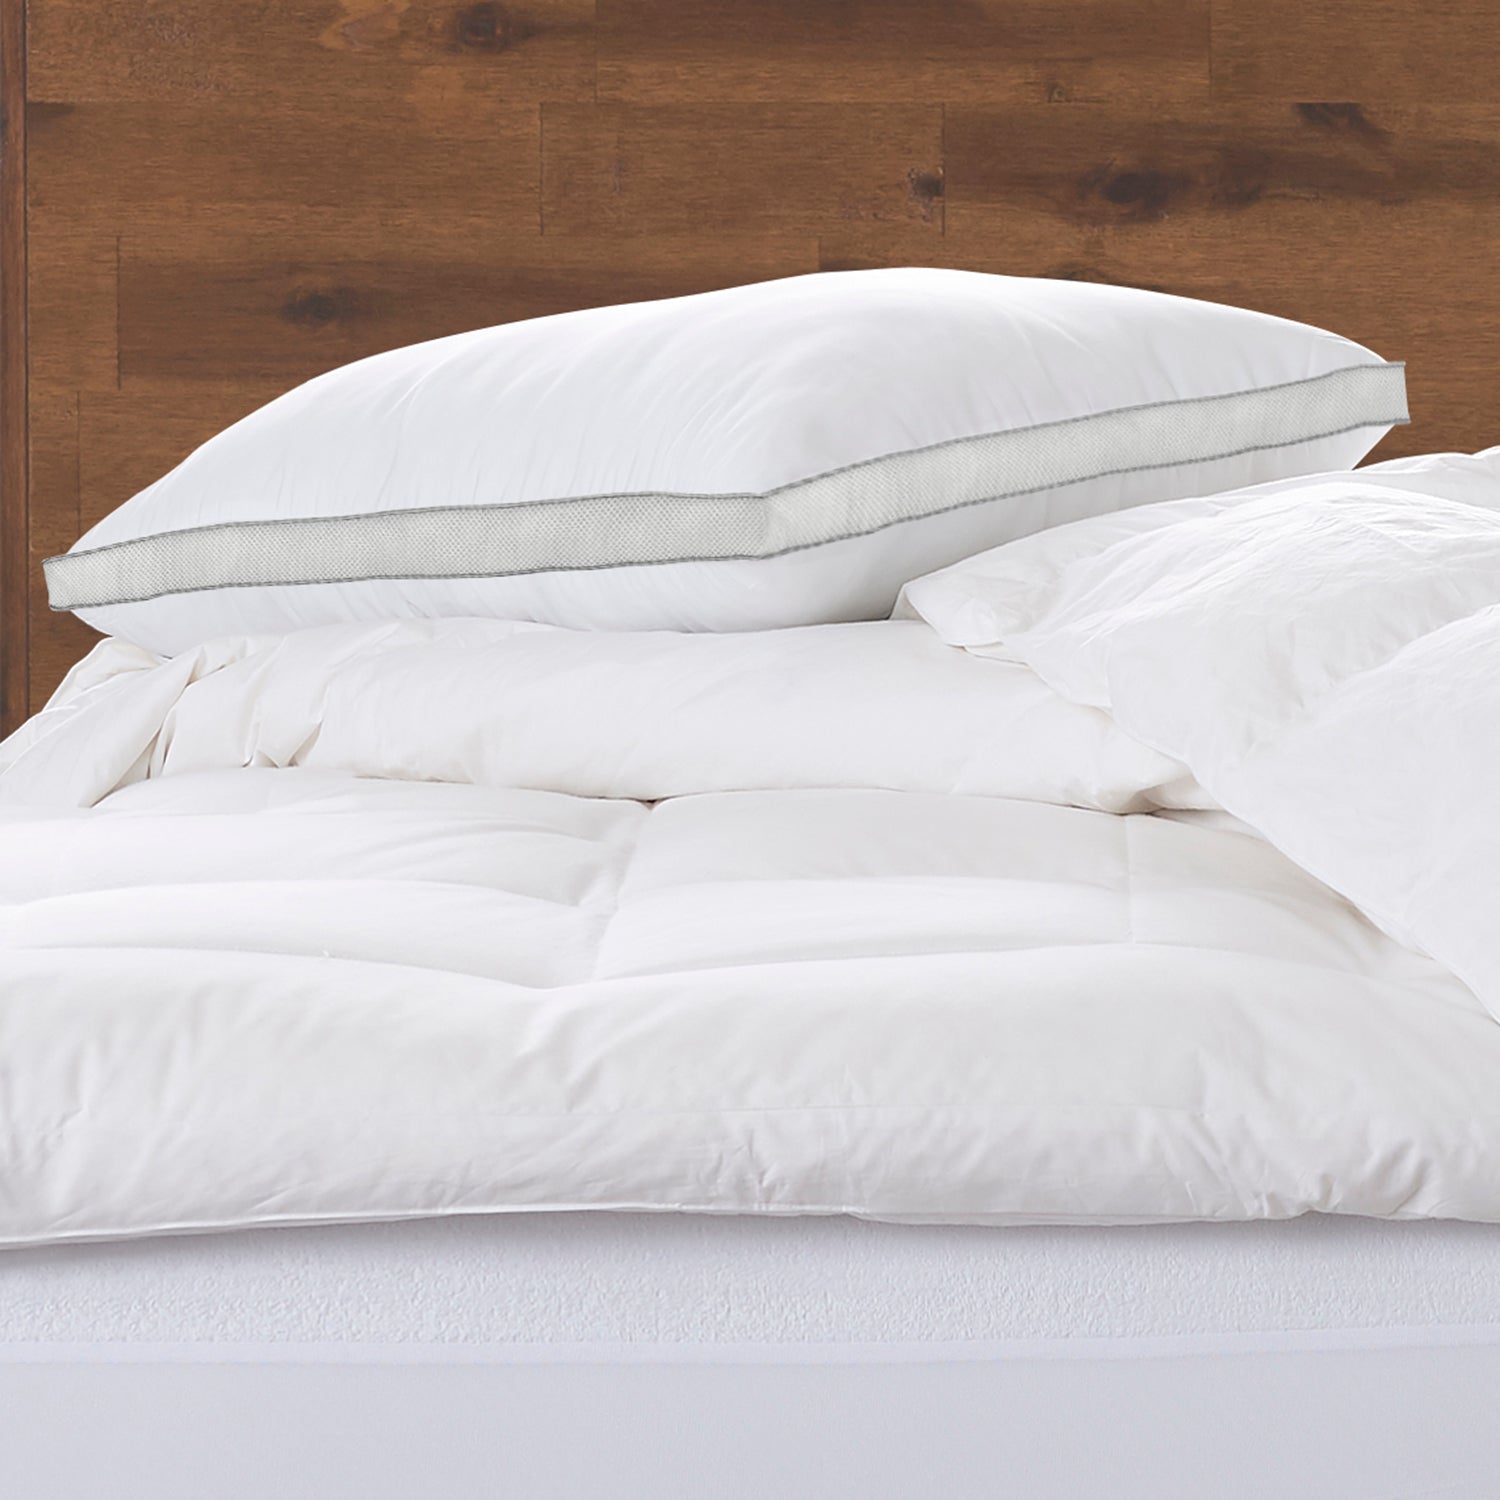 MEMORY FIBER Pillow 100% Cotton Luxurious Mesh Gusseted Shell All Sleeper Pillow